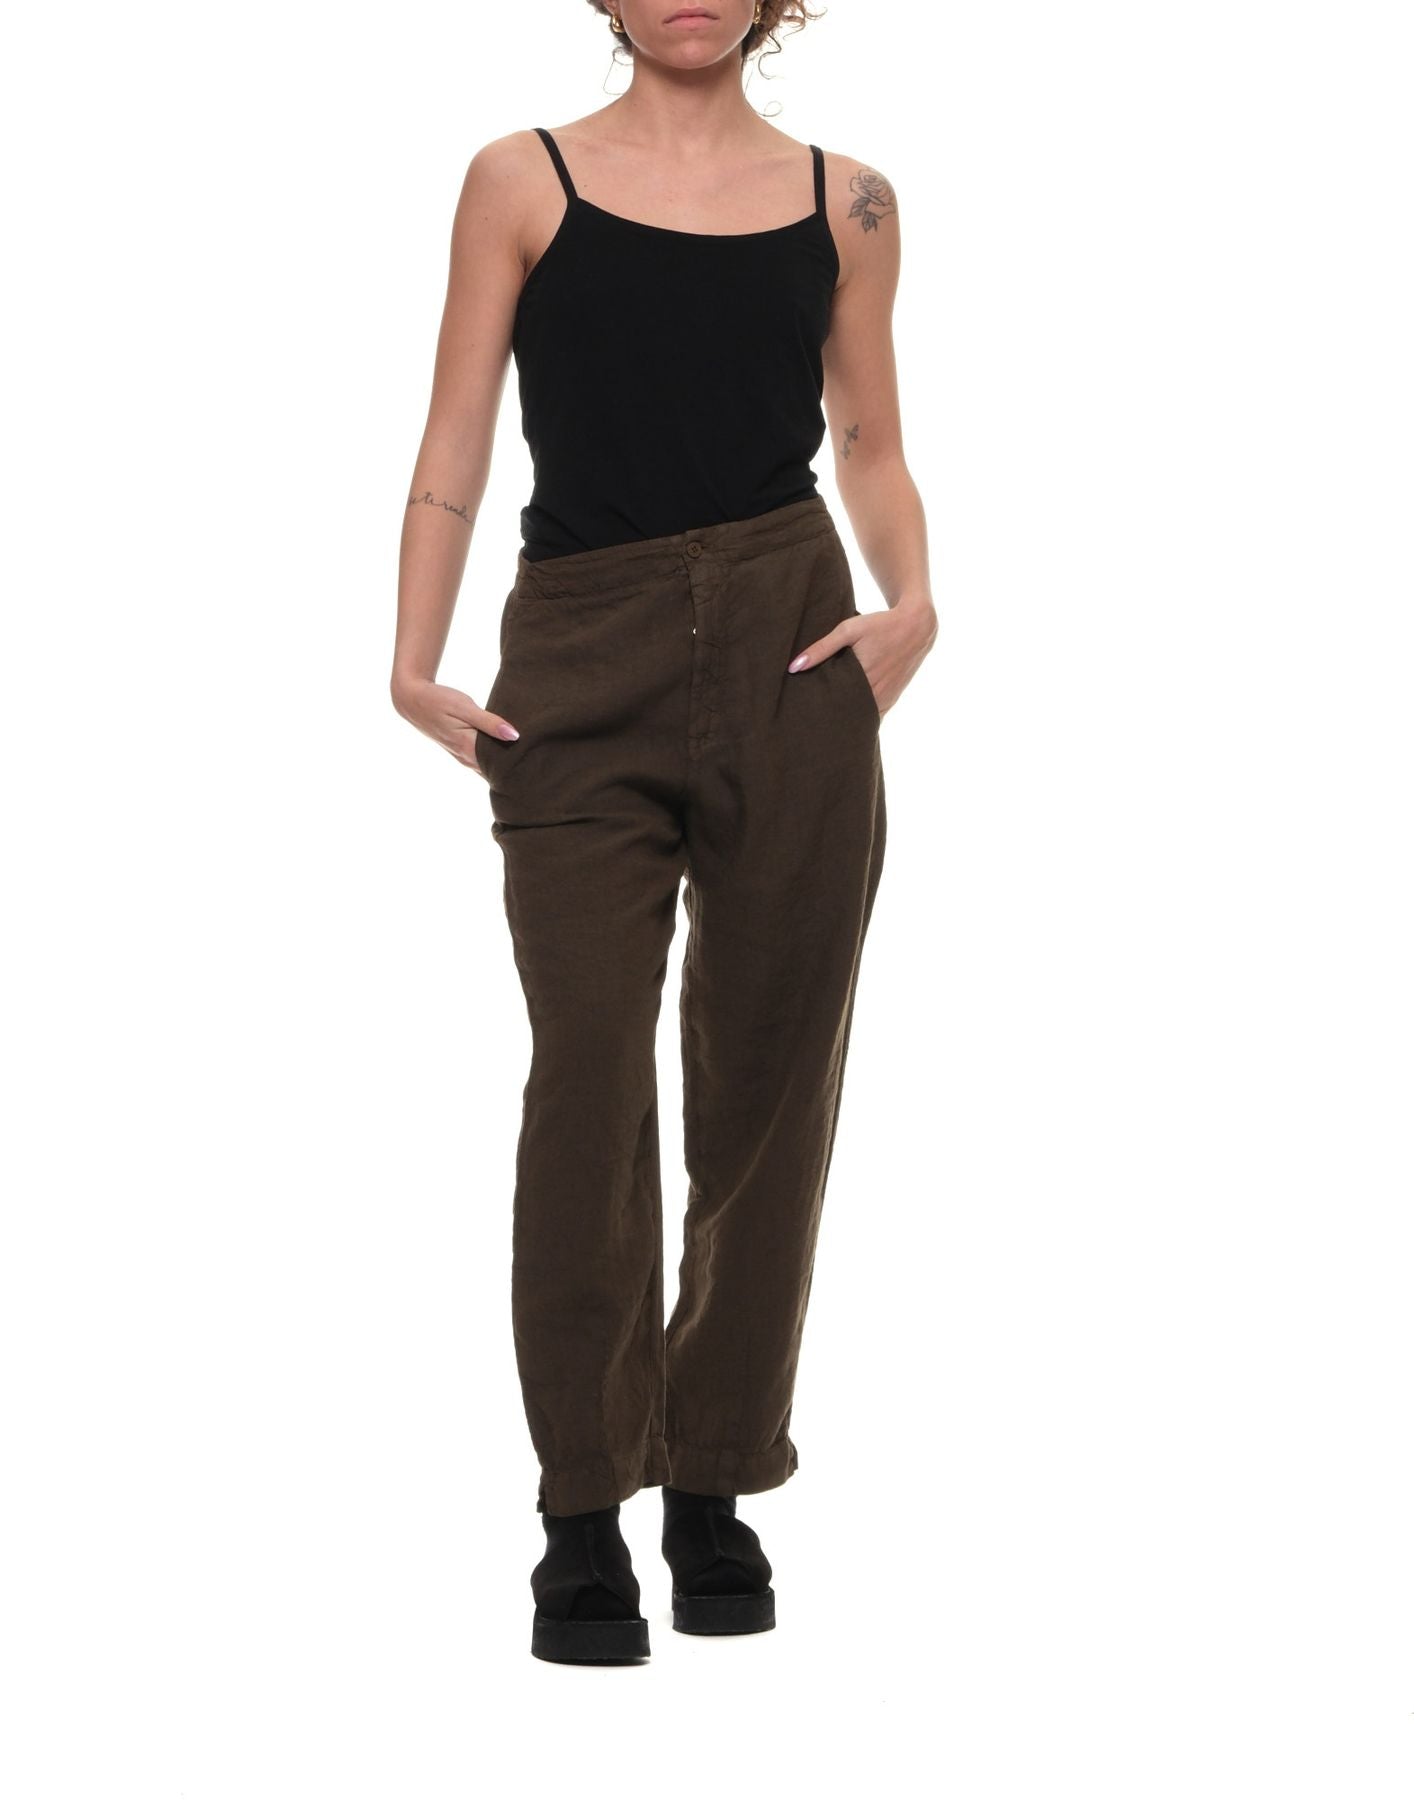 Pantalones para la mujer CFDTRWD132 06 TRANSIT